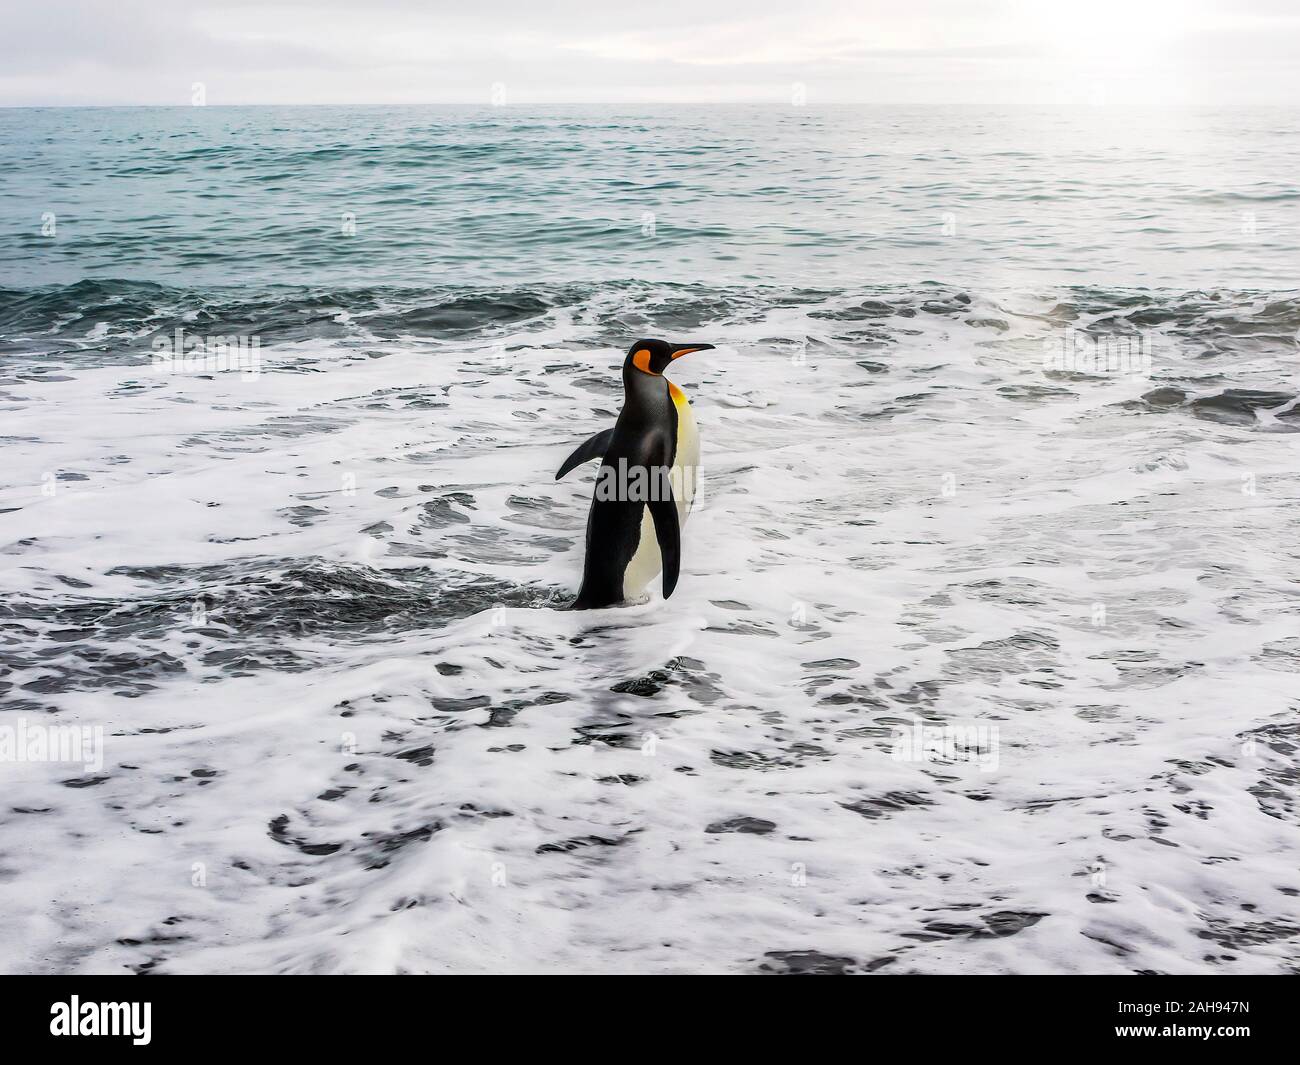 Un solitario pinguino reale (Aptenodytes patagonicus) camminando rapidamente nel mare schiumoso, pronti a nuotare. Isola Georgia del Sud nel sud dell'Oceano Atlantico. Foto Stock